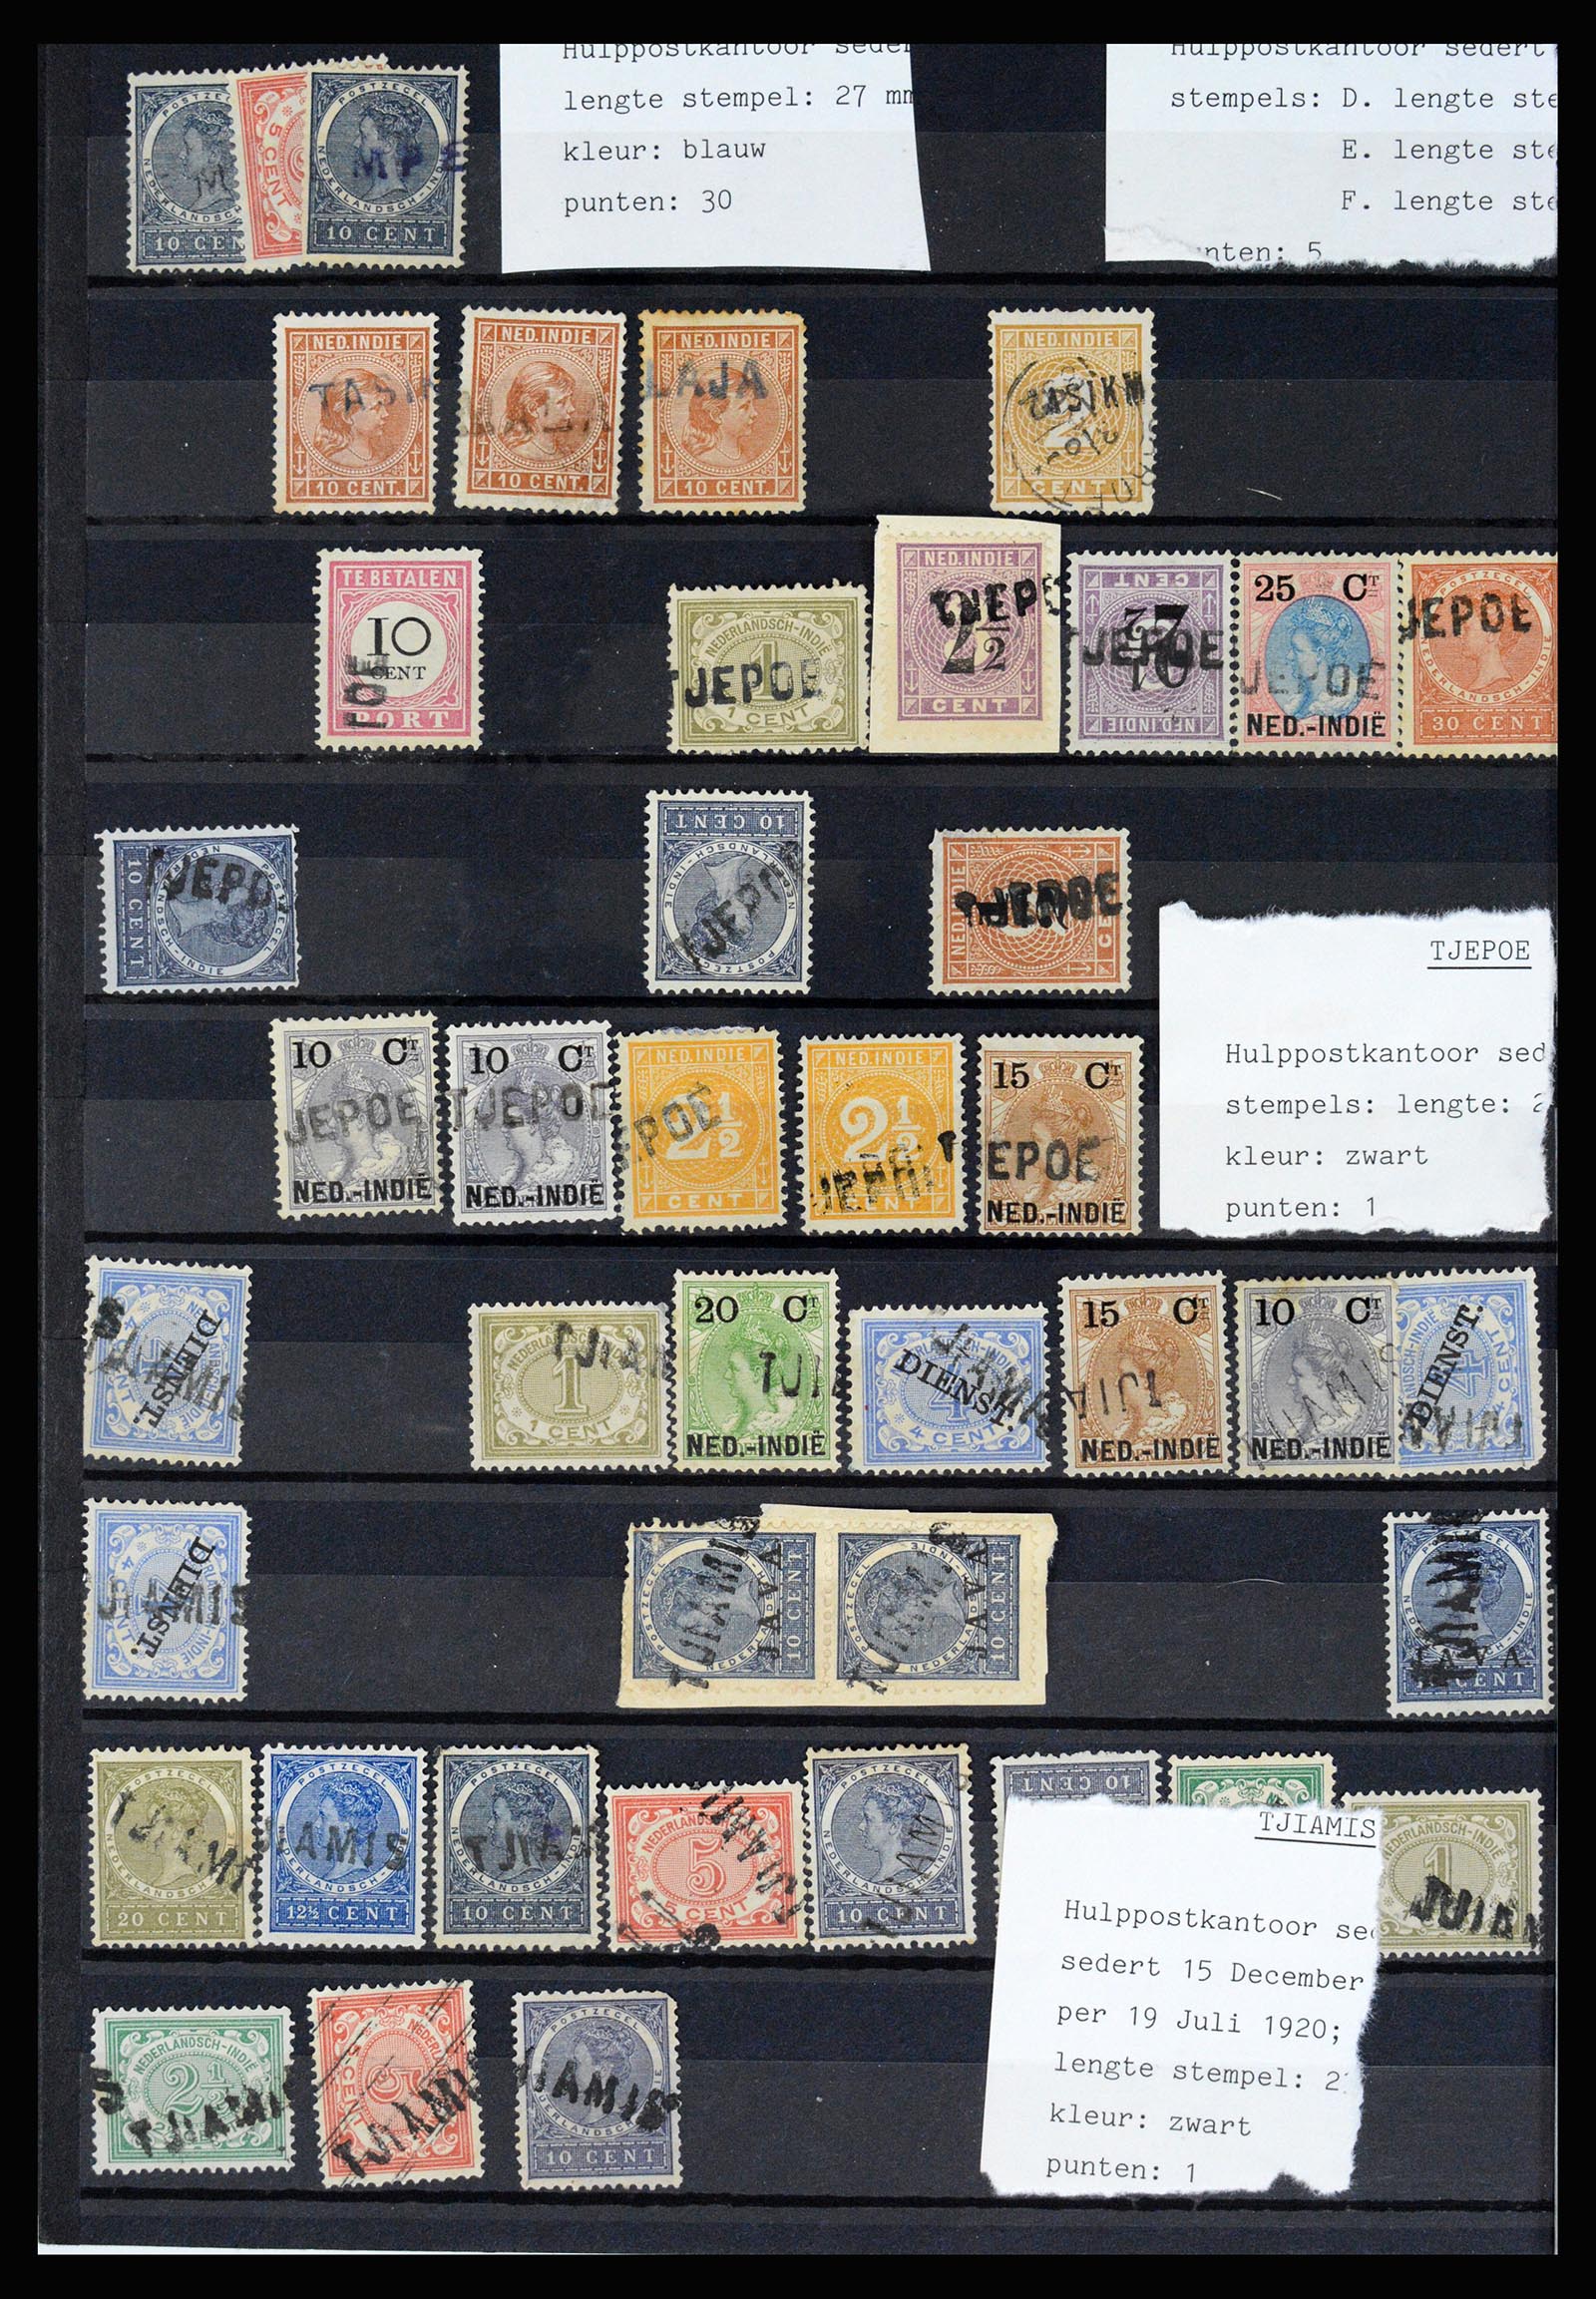 36512 070 - Stamp collection 36512 Nederlands Indië stempels 1872-1930.